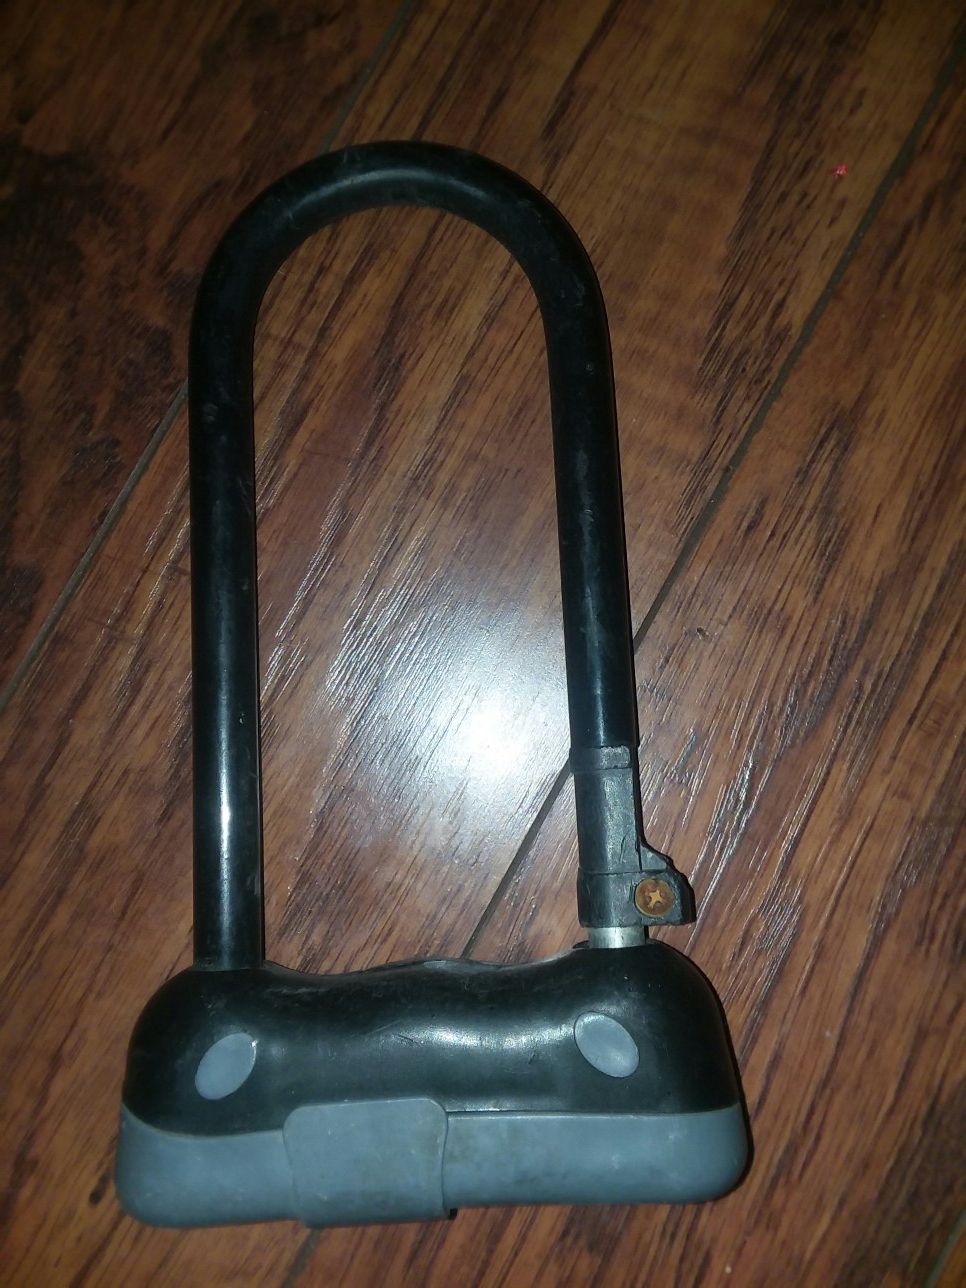 Heavy duty bike lock